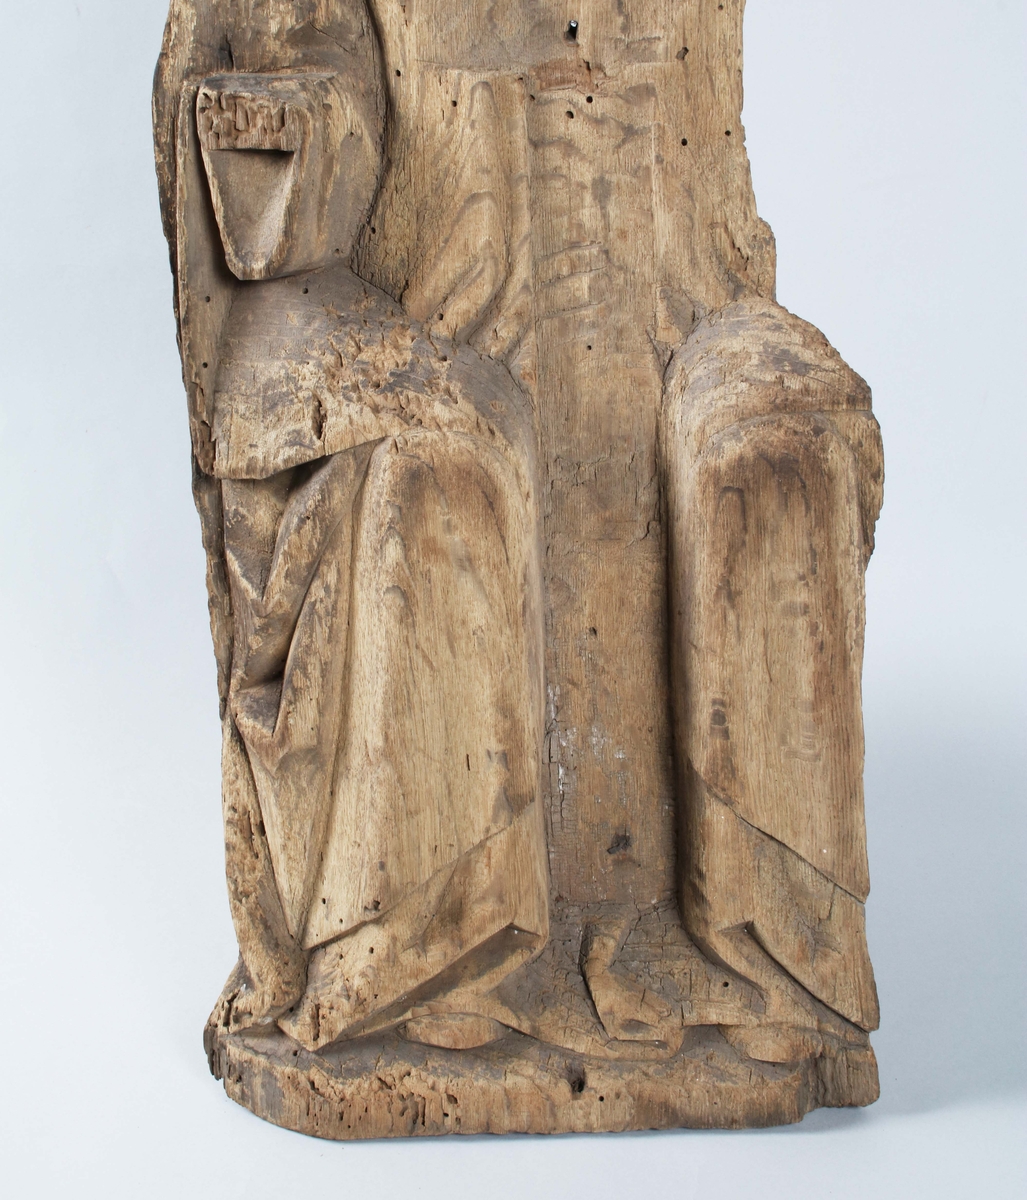 Träskulptur "Nådastolen", 1400-tal, mycket defekt (träbortfall); all färg borta. Sittande frontalt; båda armarne saknas; krucifixet saknas; värkar besynnerligen platt. Maskstungen. Proveniens Tärby kyrka.

Nådastolen är ett motiv som uppkommer på 1100-talet men som i den kyrkliga konsten under 1400-talet får ett rejält uppsving. Motivet, som är en treenighetsframställning visande fadern, sonen och den helige ande, finns återgivet i flera olika media, till exempel i muralmålningar, på smycken och i altarskåp. Det visar hur Gud, iförd krona eller påvetiara, sitter på en tronstol och håller upp och visar fram den döde Jesus för betraktaren med den Helige Andes duva svävande bredvid eller sittande på korset. (Historiska museet)

Tärby kyrka härstammar troligen från 1200-talet. Under 1700-talet renoverades kyrkan och de gamla målningarna som då gjordes, målades över under 1800-talet. Kyrkan vilar förmodligen på en forntida offerplats, som var centrum för en kulturbygd sedan årtusenden. (Svenska kyrkan)